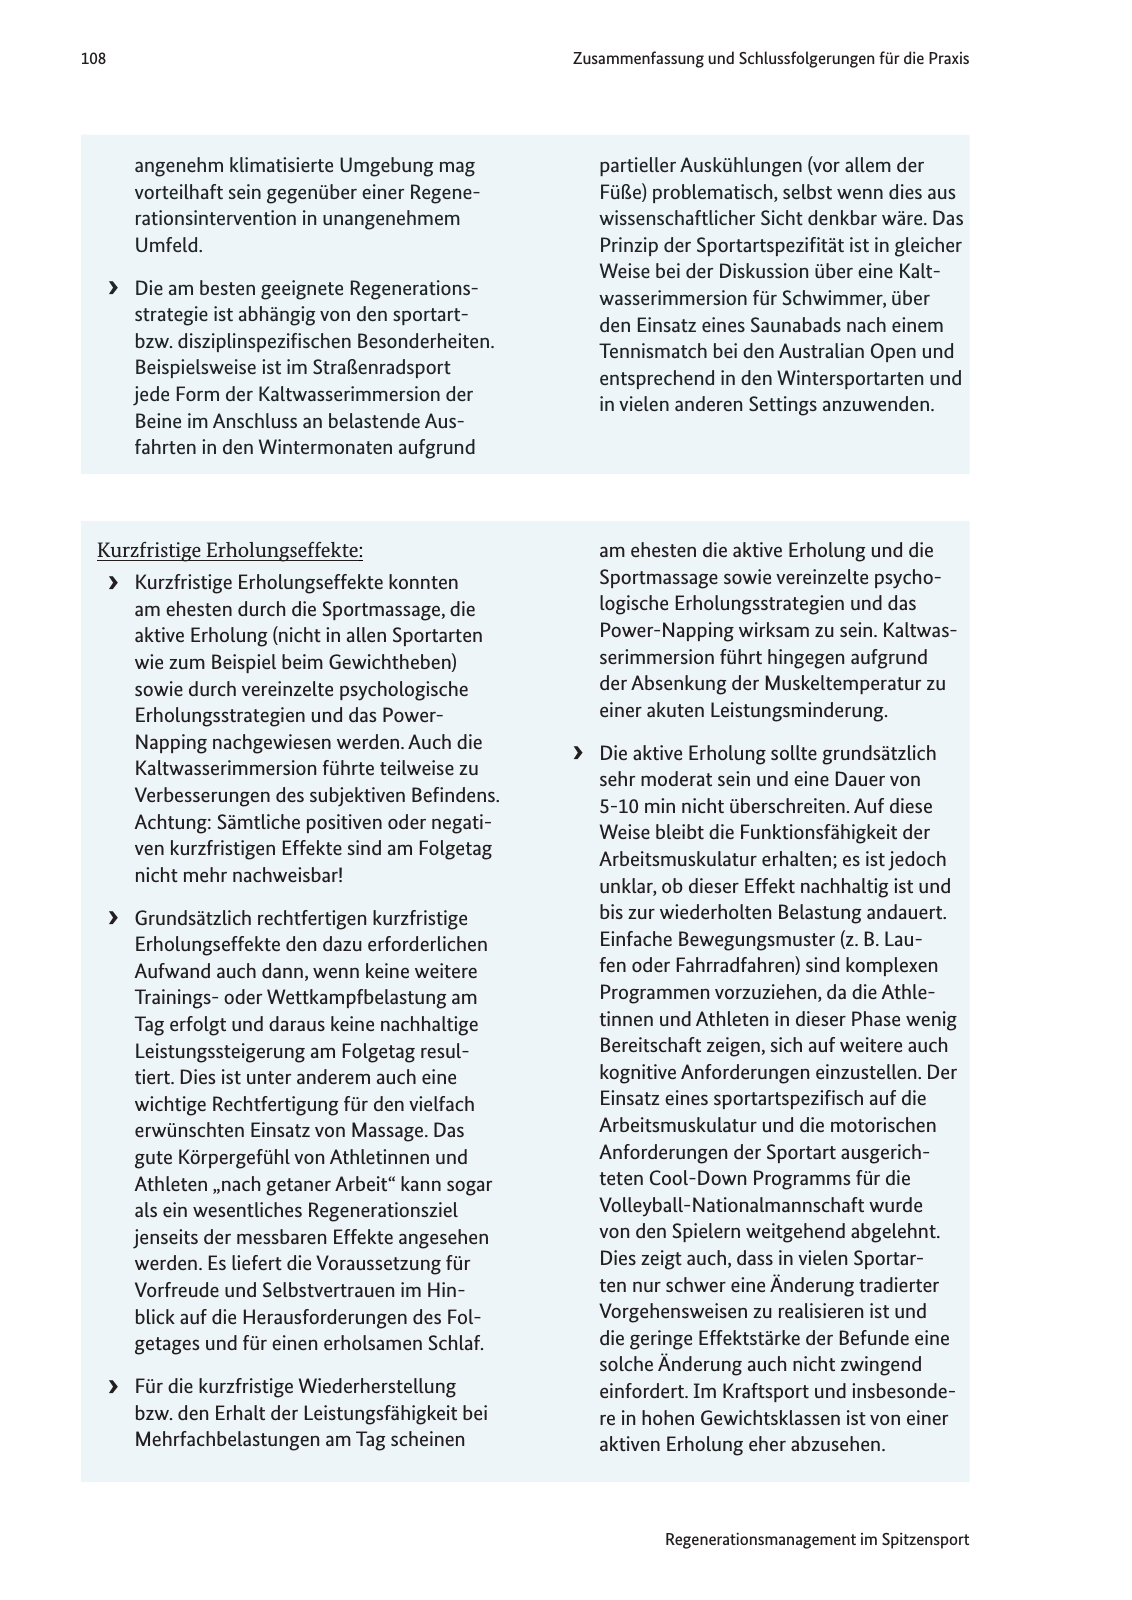 Vorschau Handreichung Regmann / Regenerationsmanagement im Spitzensport Seite 109